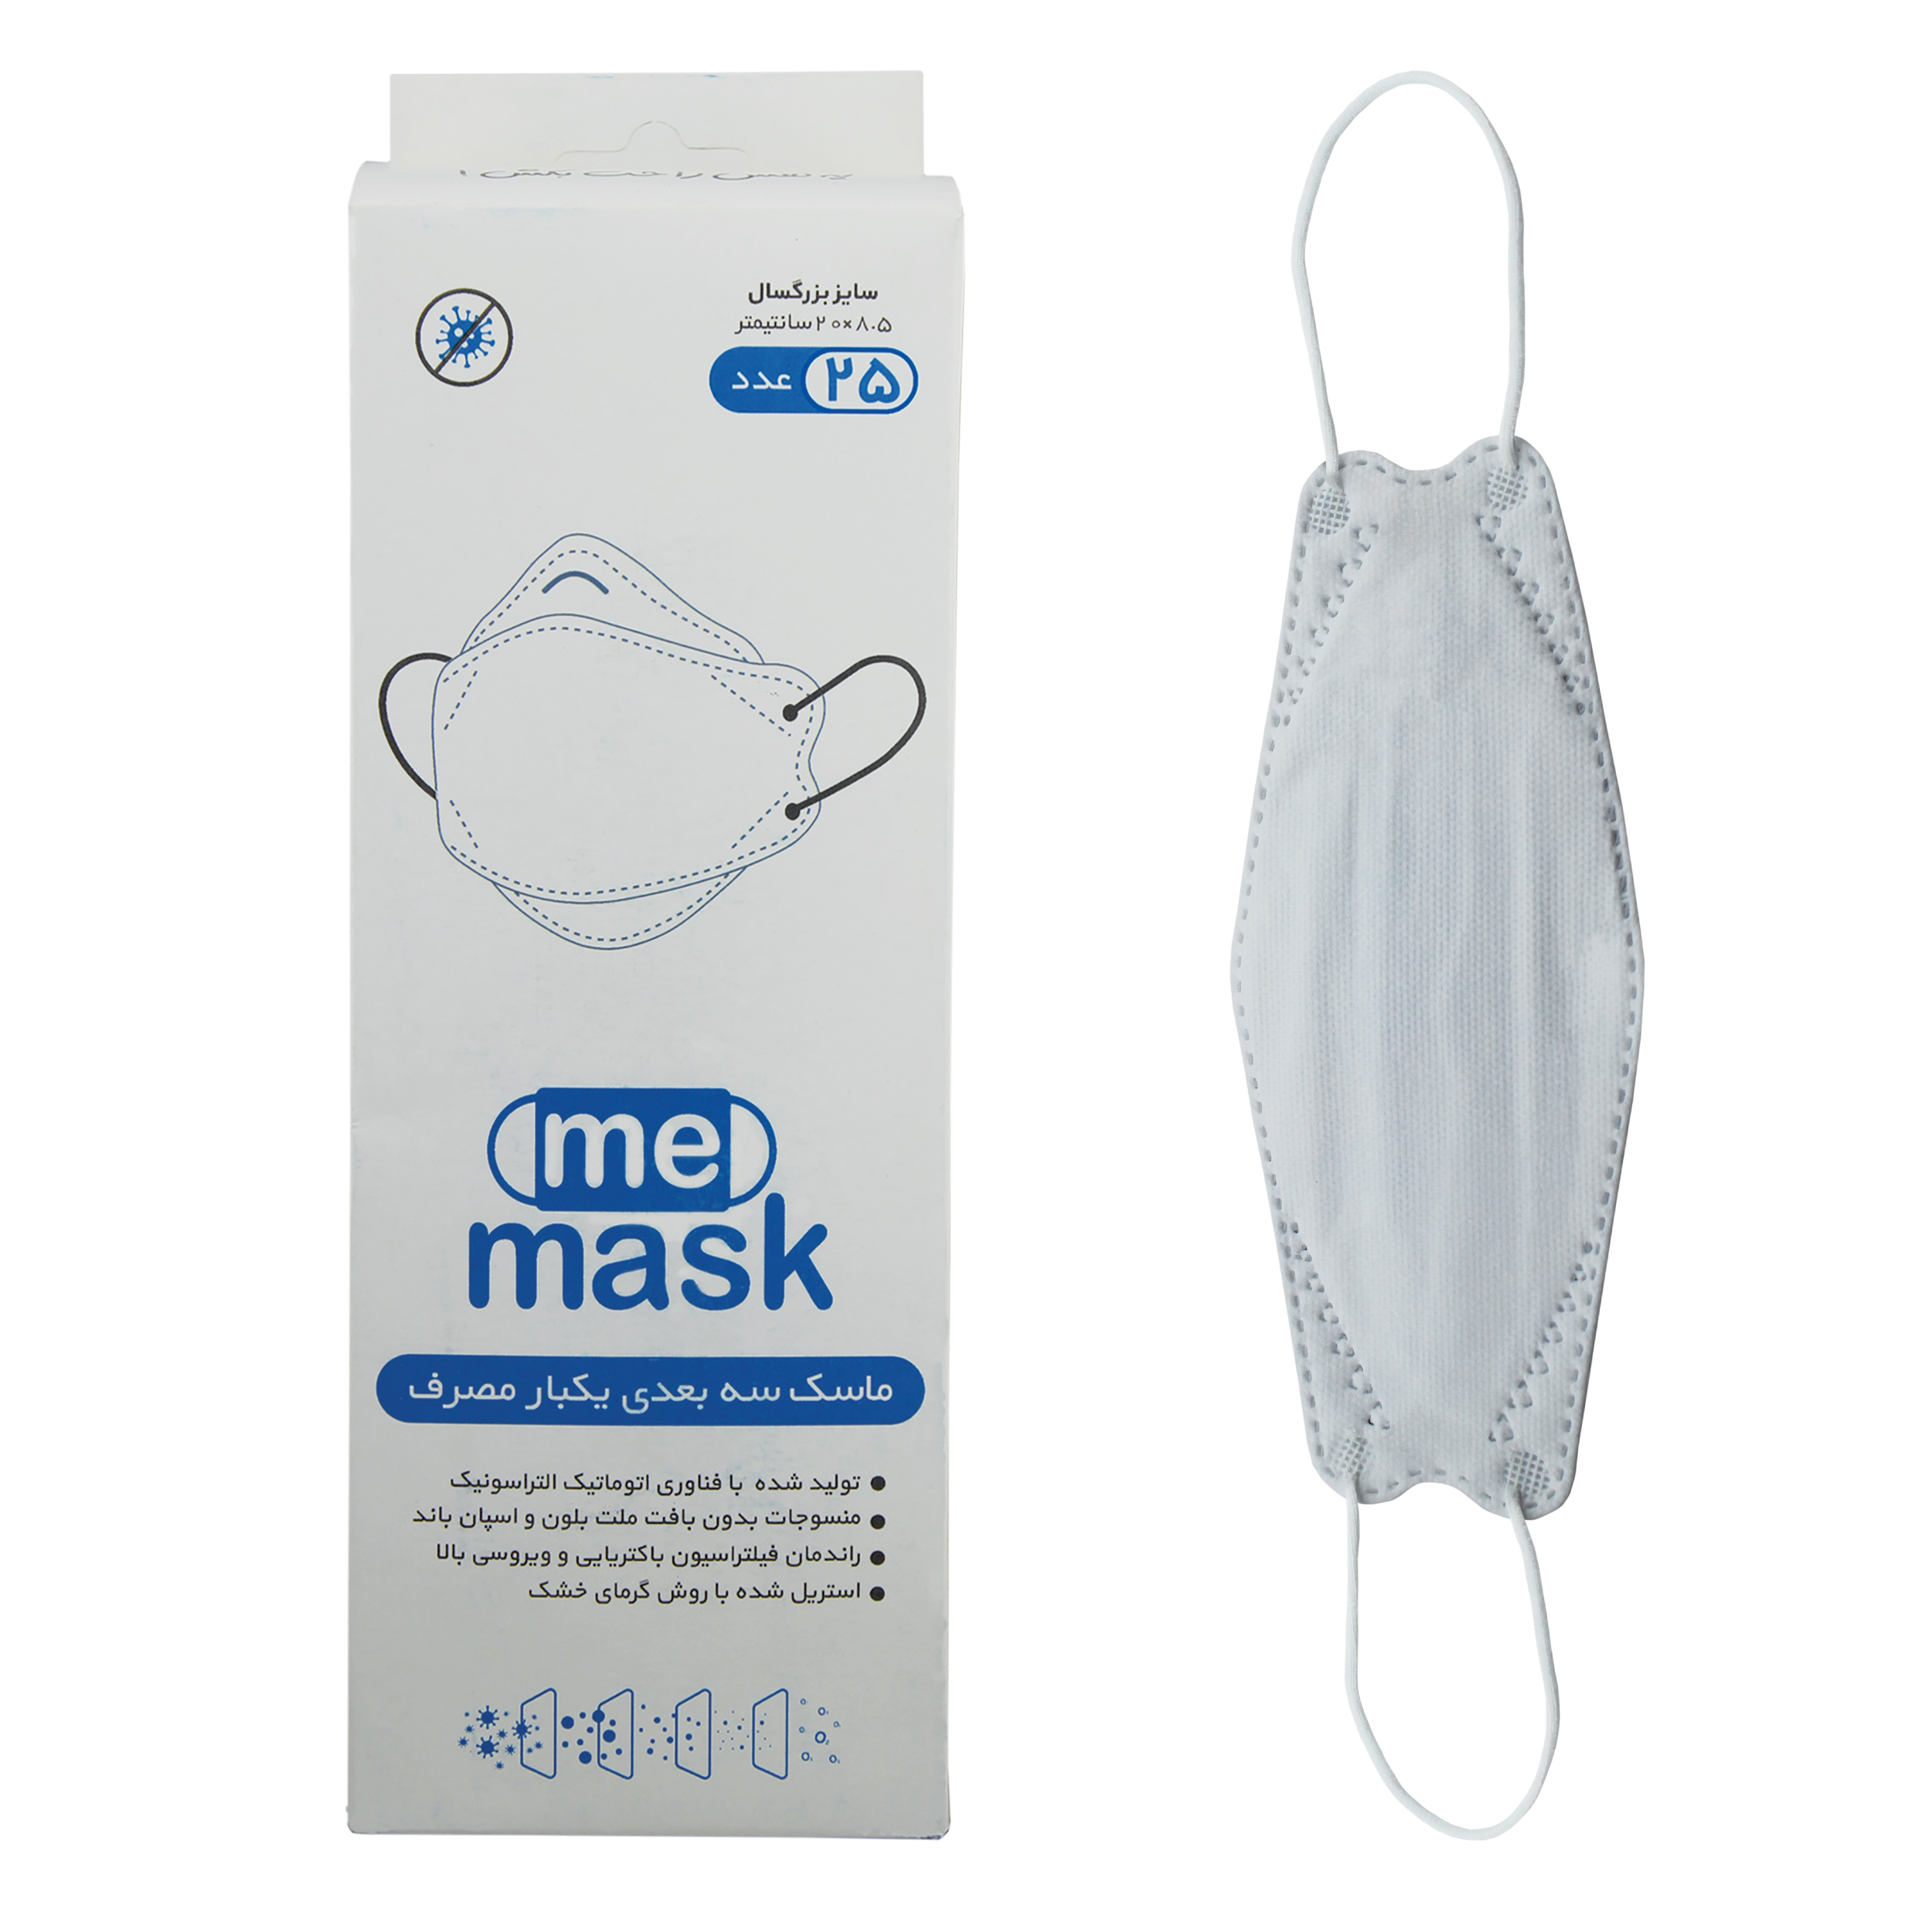 نقد و بررسی ماسک تنفسی می ماسک مدل سه بعدی Whi-25 بسته 25 عددی توسط خریداران